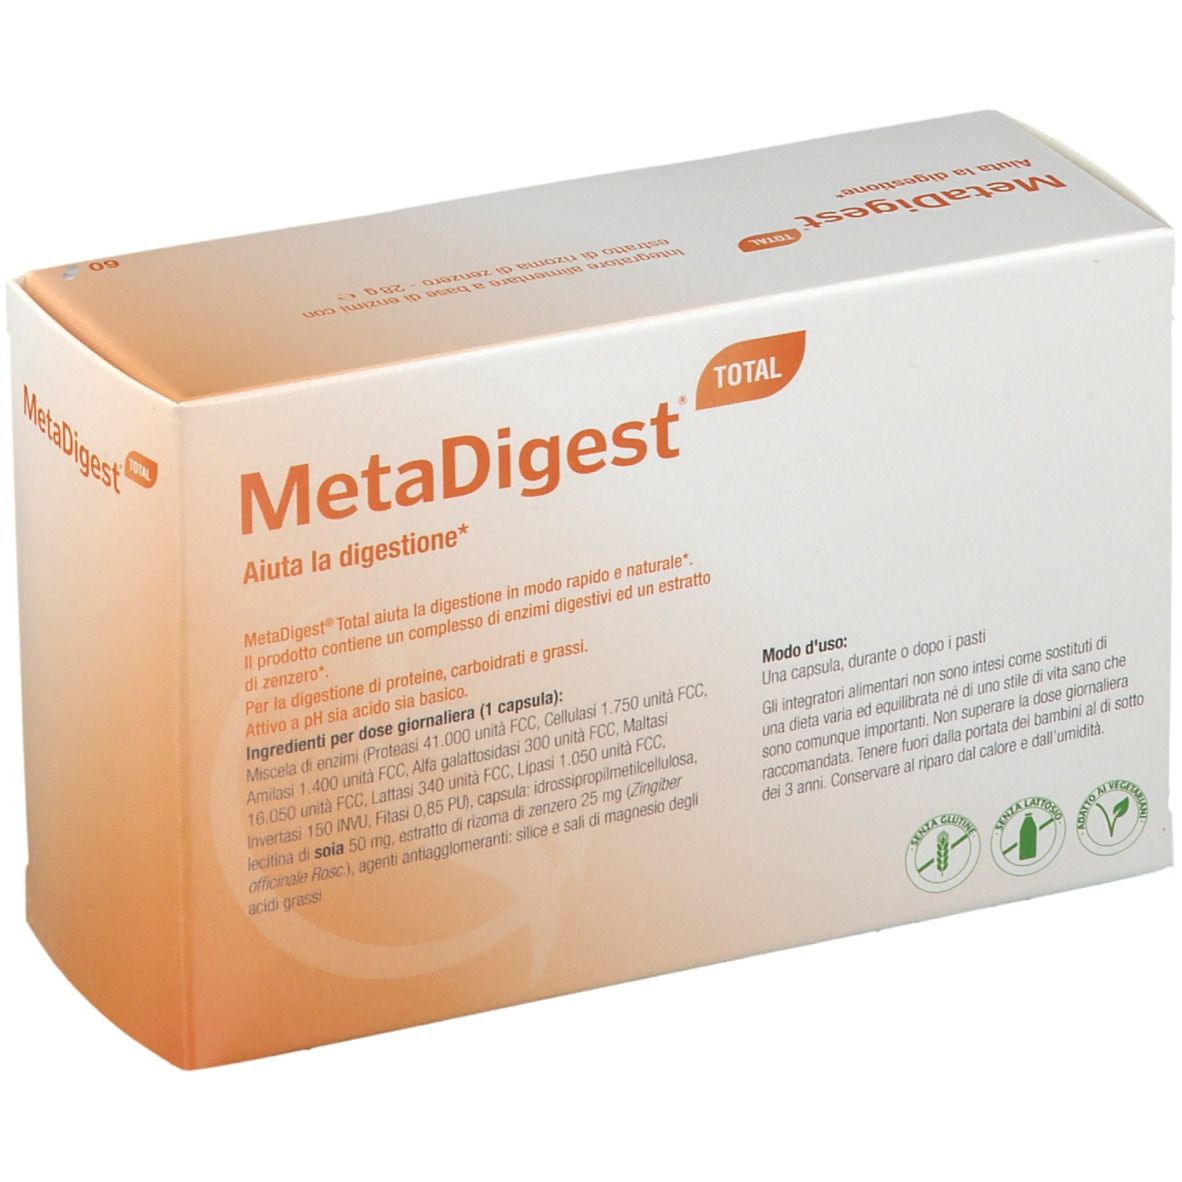 Metagenics™ MetaDigest Total